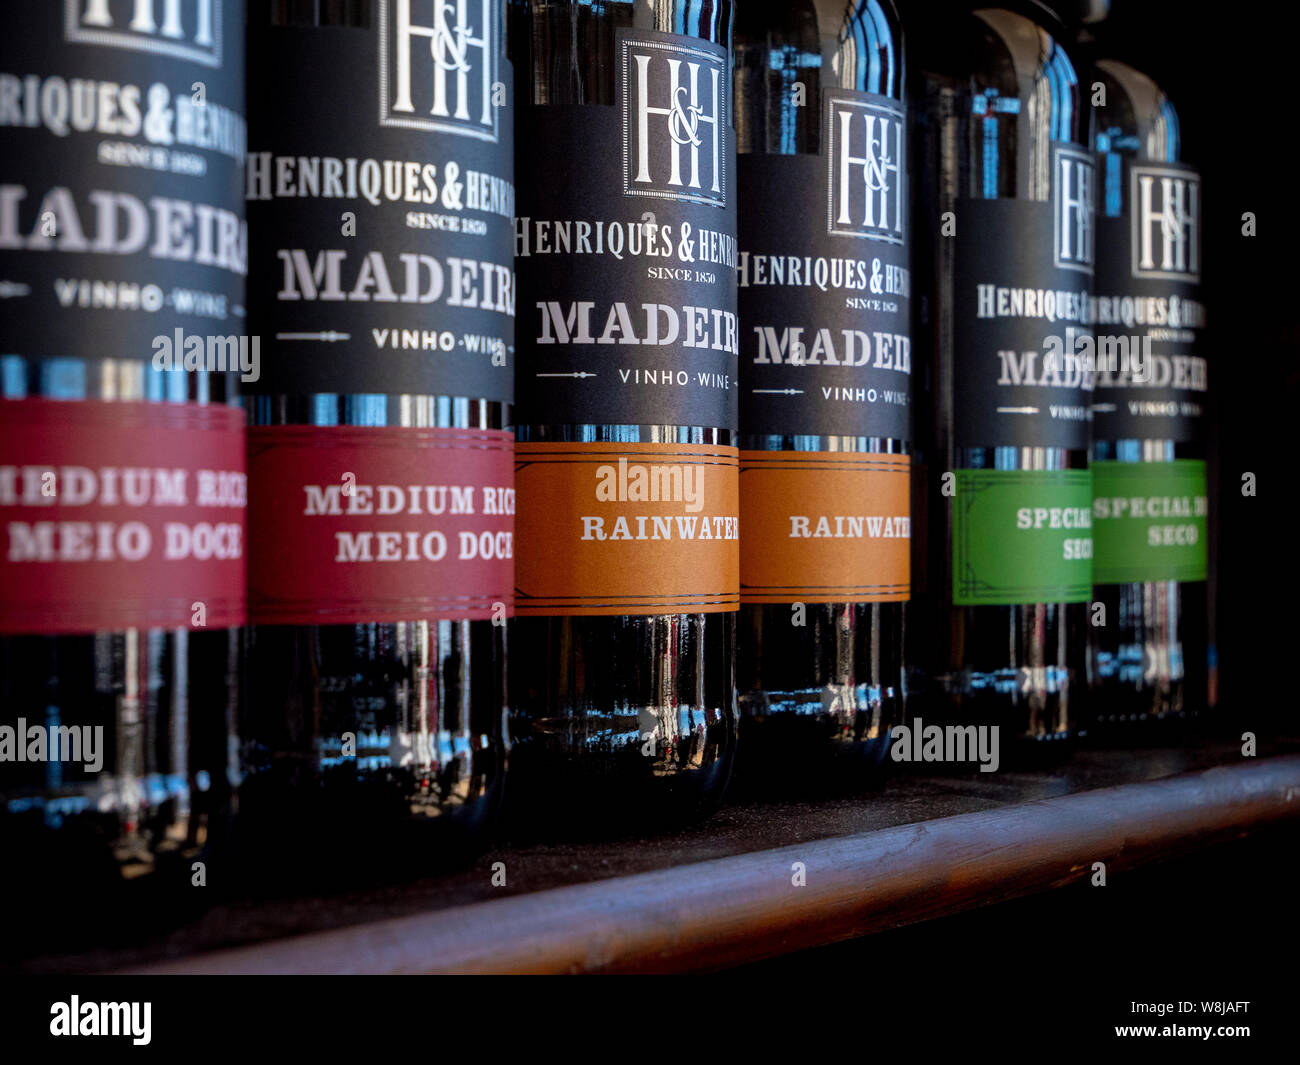 Flaschen Wein aus Madeira auf dem Regal Stockfoto